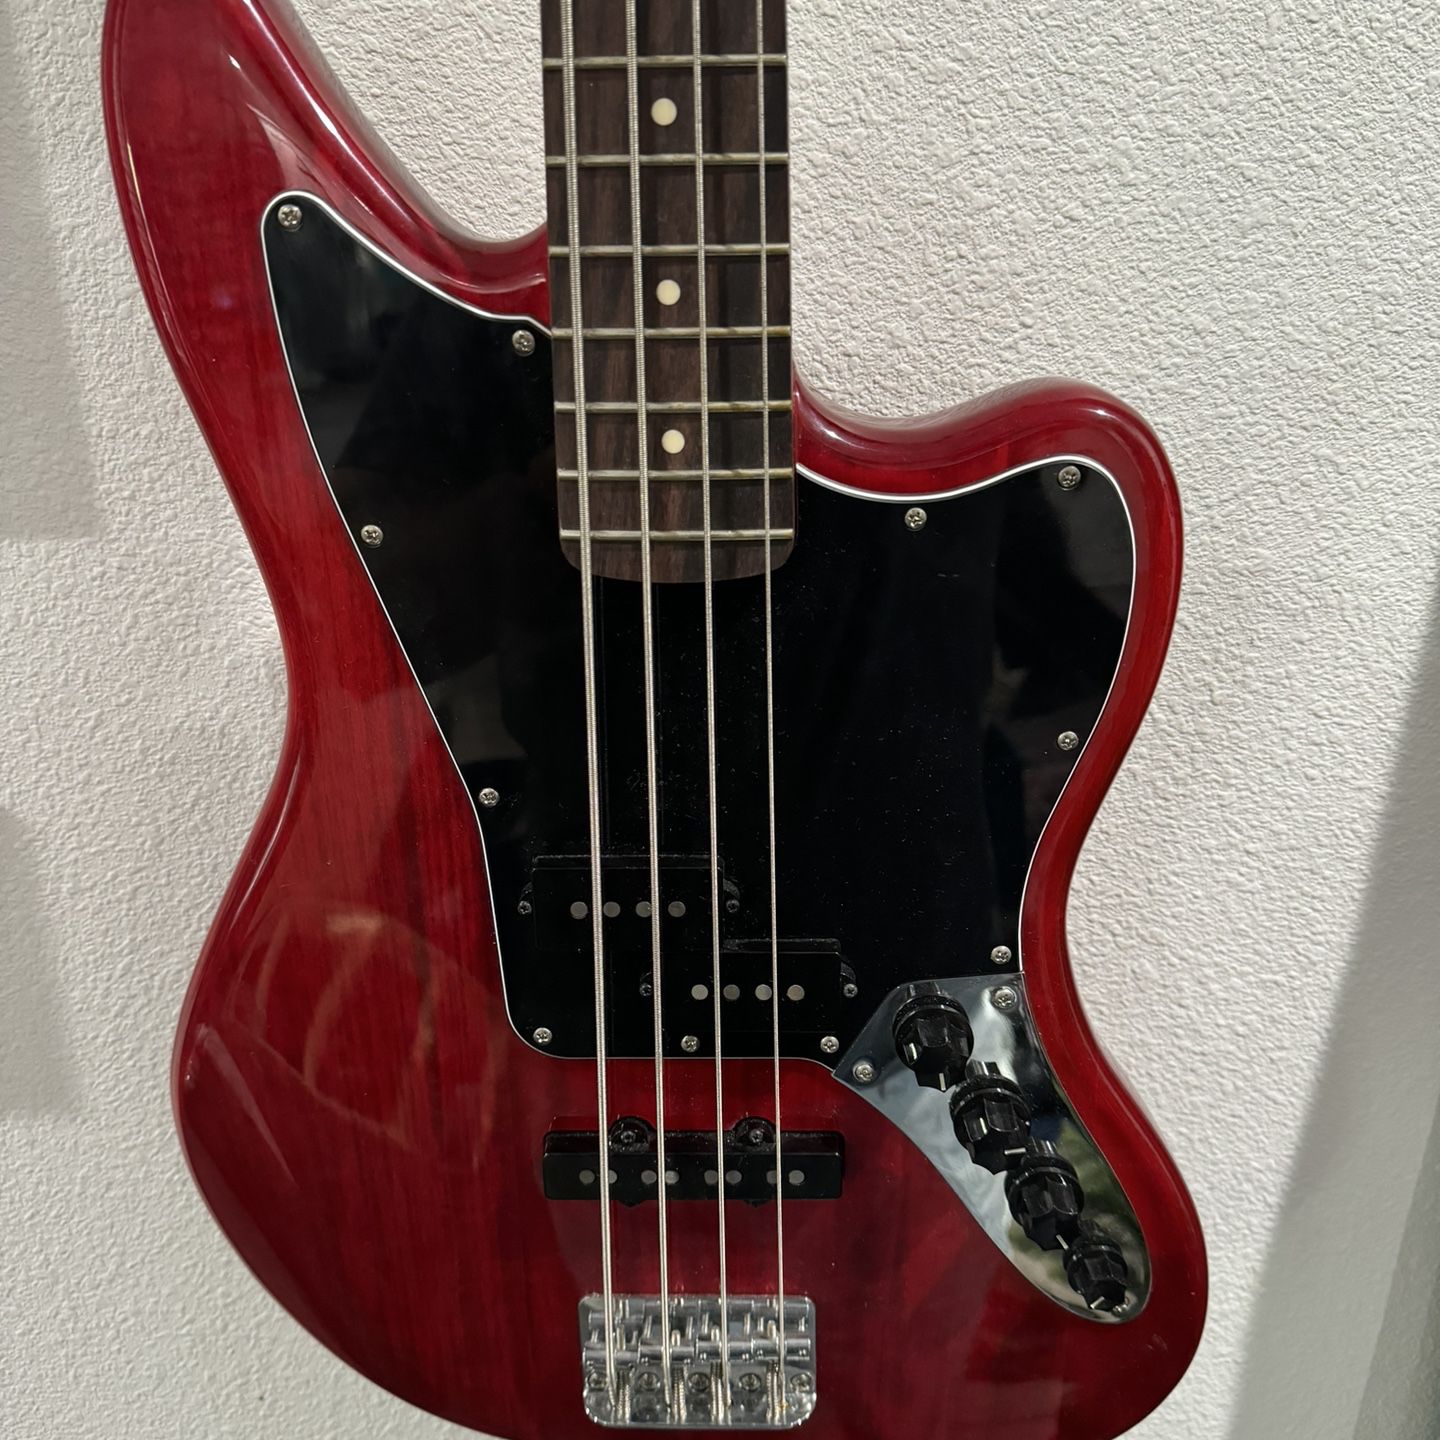 Jaguar Bass